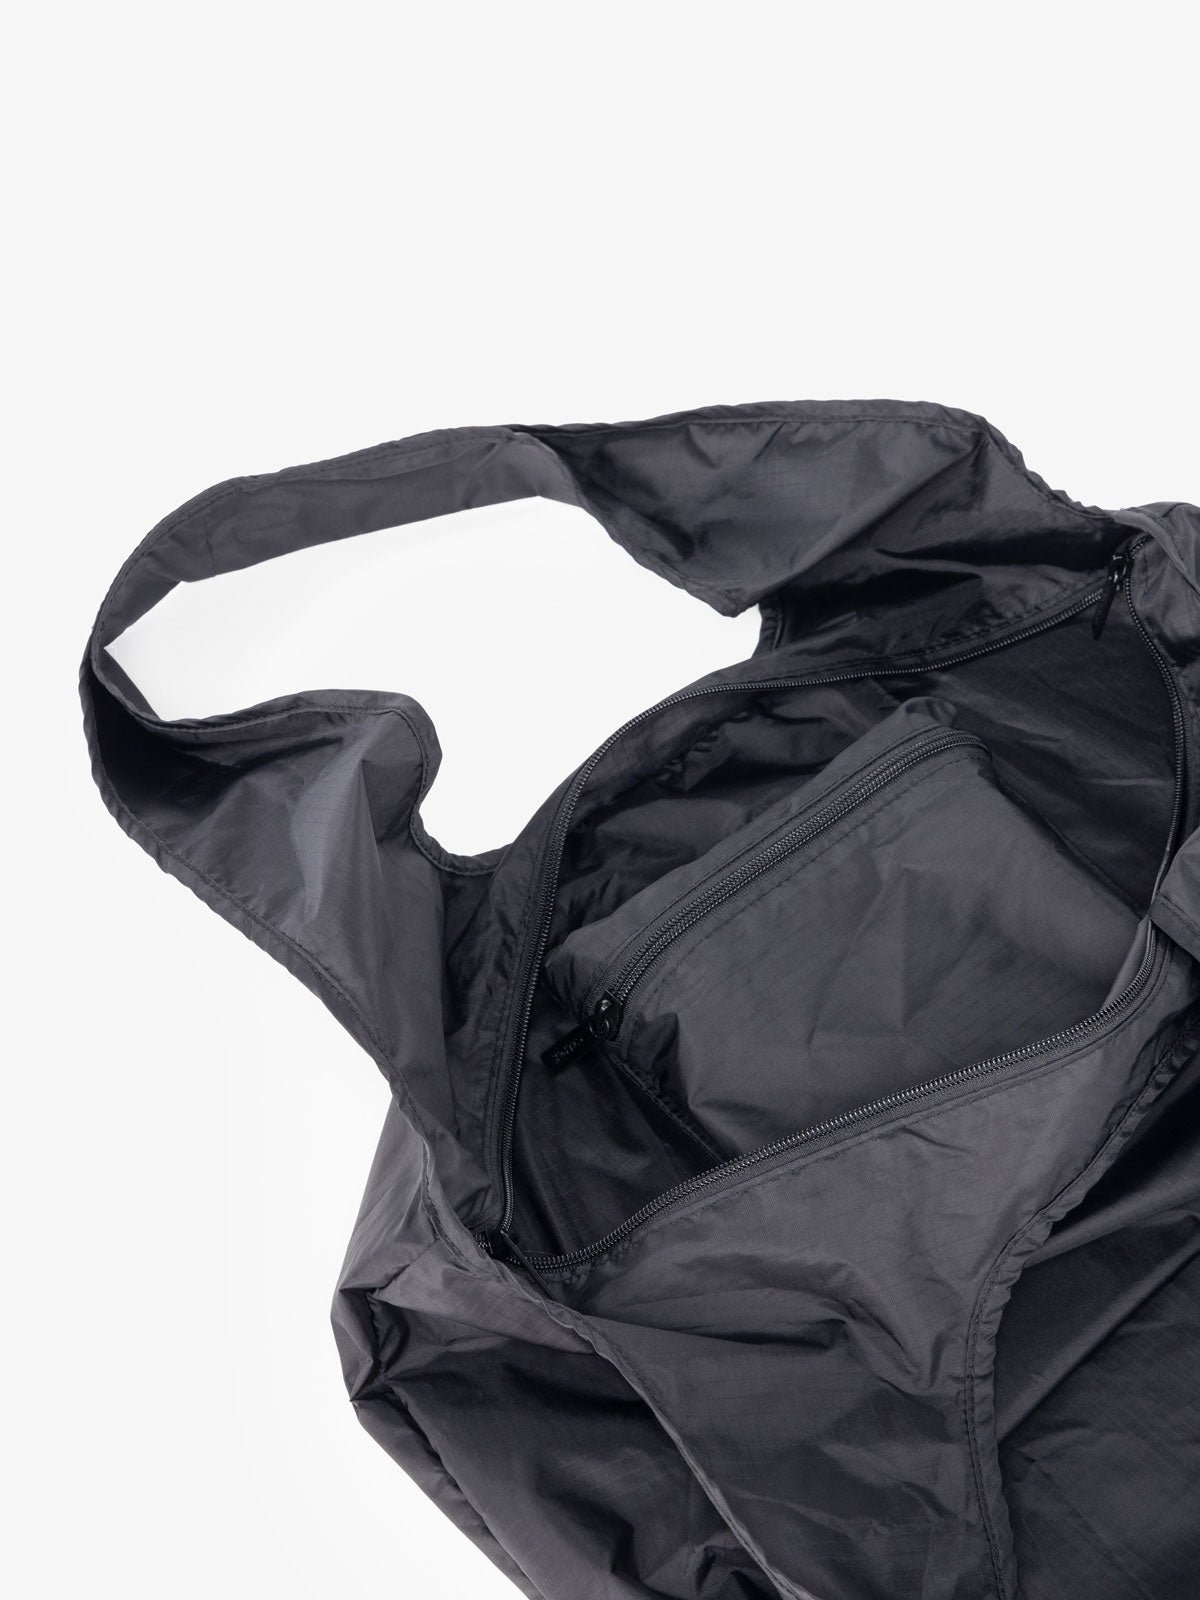 CALPAK Packable Tote Bag in black